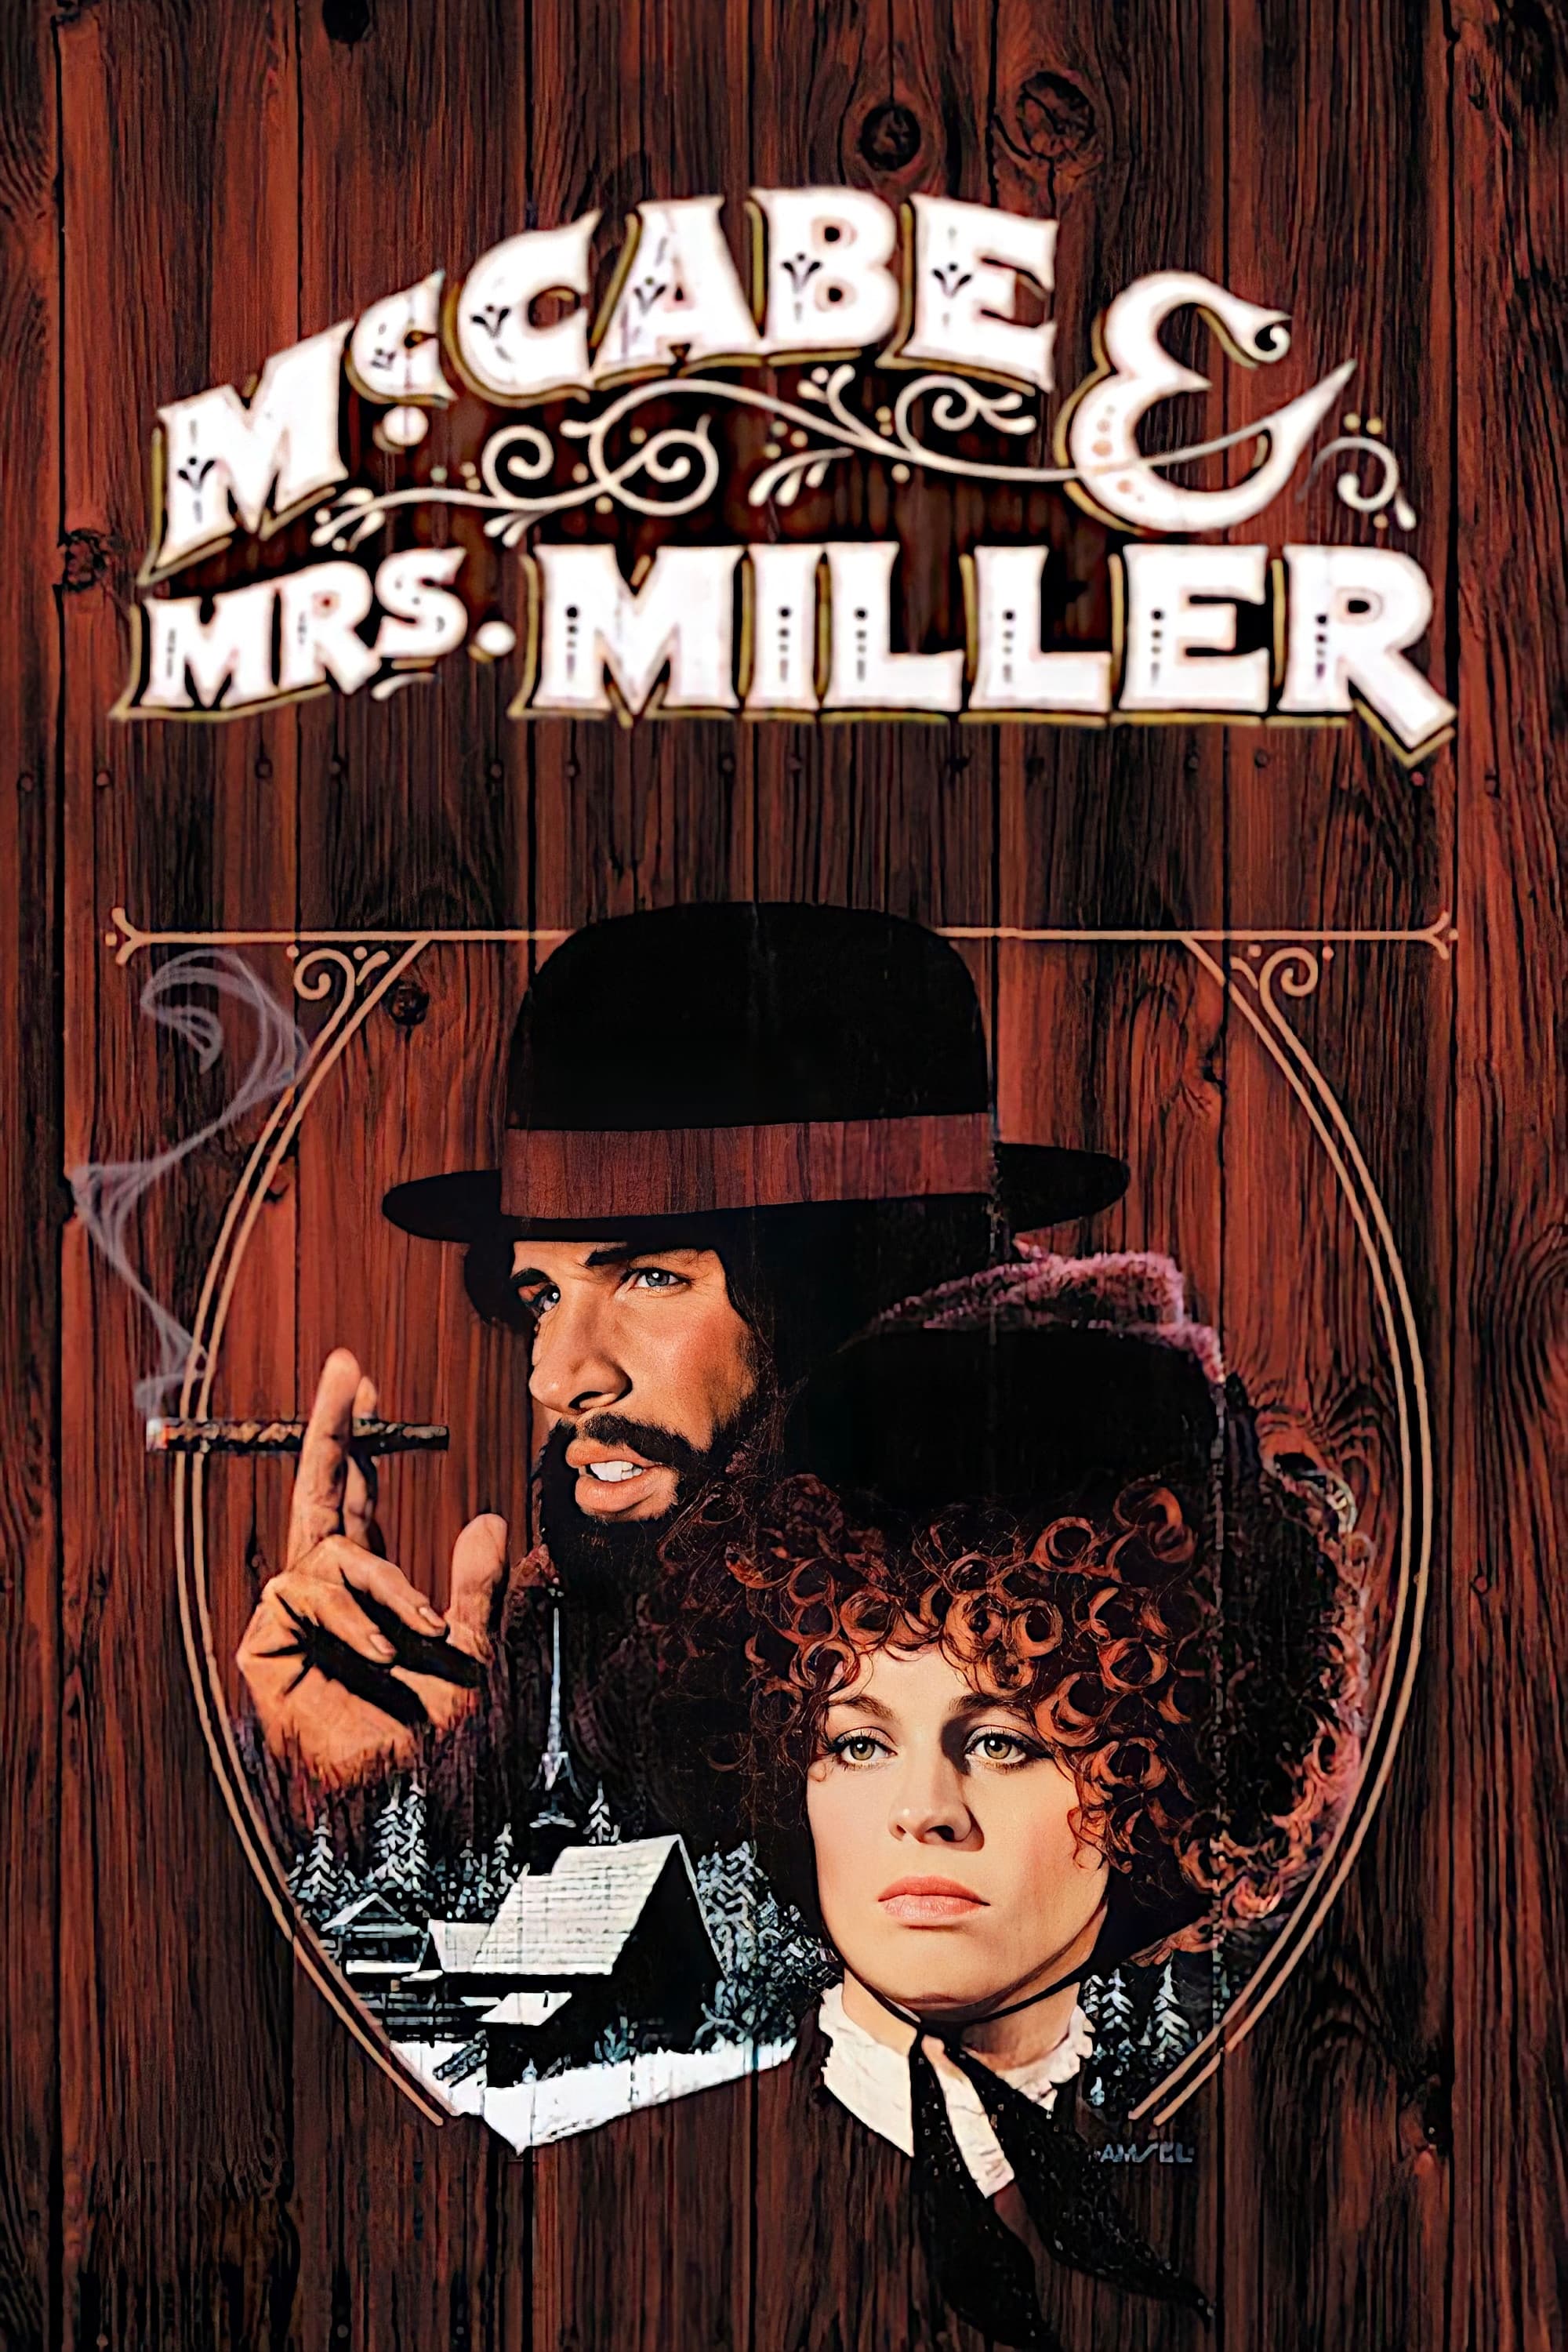 McCabe & Mrs. Miller (1971)